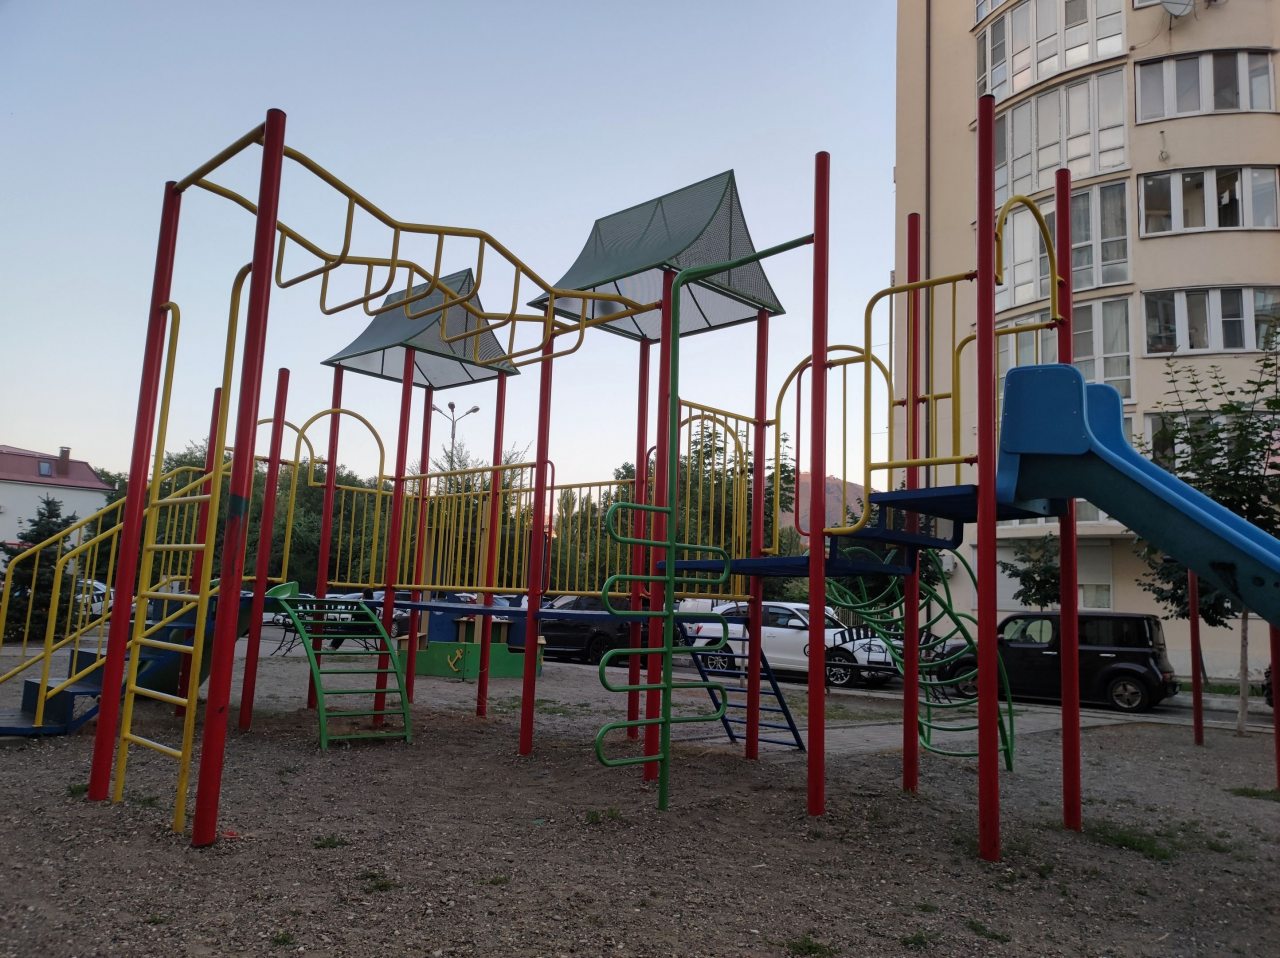 Детская площадка, Апартаменты Европлюс возле ЖД вокзала